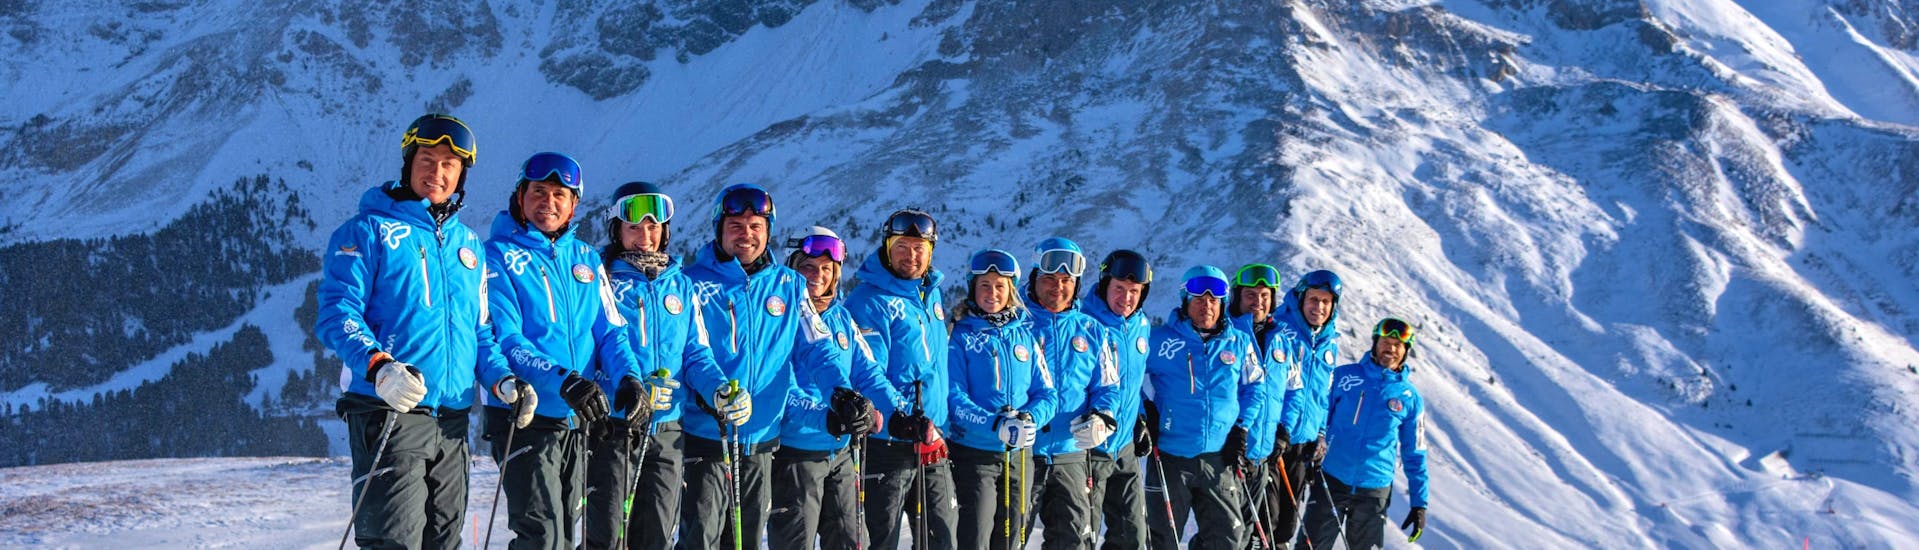 Adults Ski Lessons for Advanced with Scuola Sci e Snowboard Alpe di Pampeago - Hero image